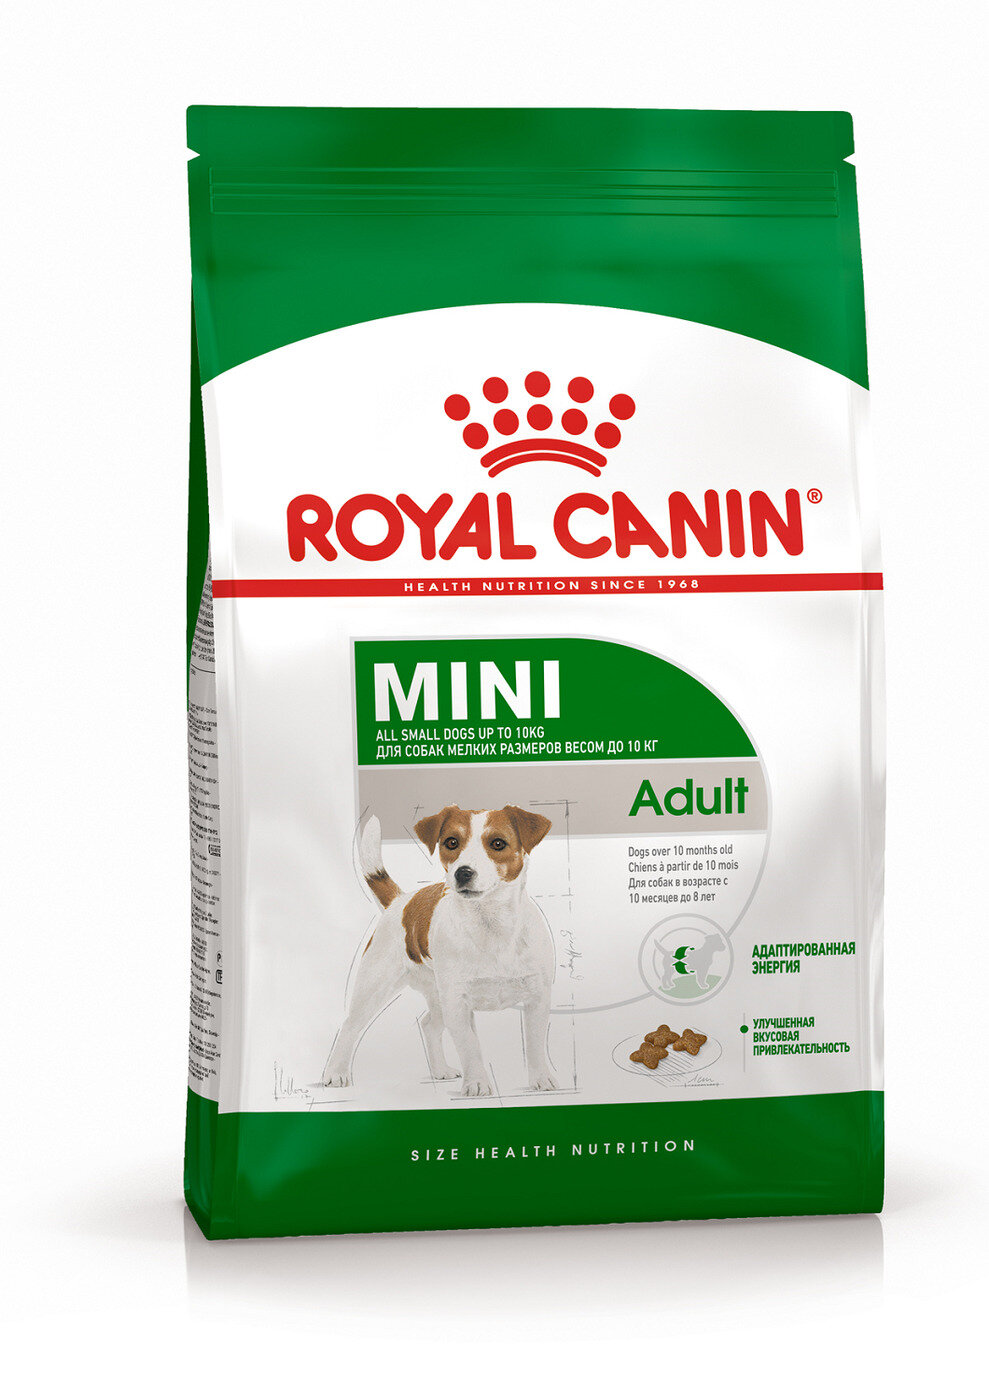 Корм Royal Canin для взрослых собак малых пород: до 10 кг, 10 мес. - 8 лет, Mini Adult, 4 кг